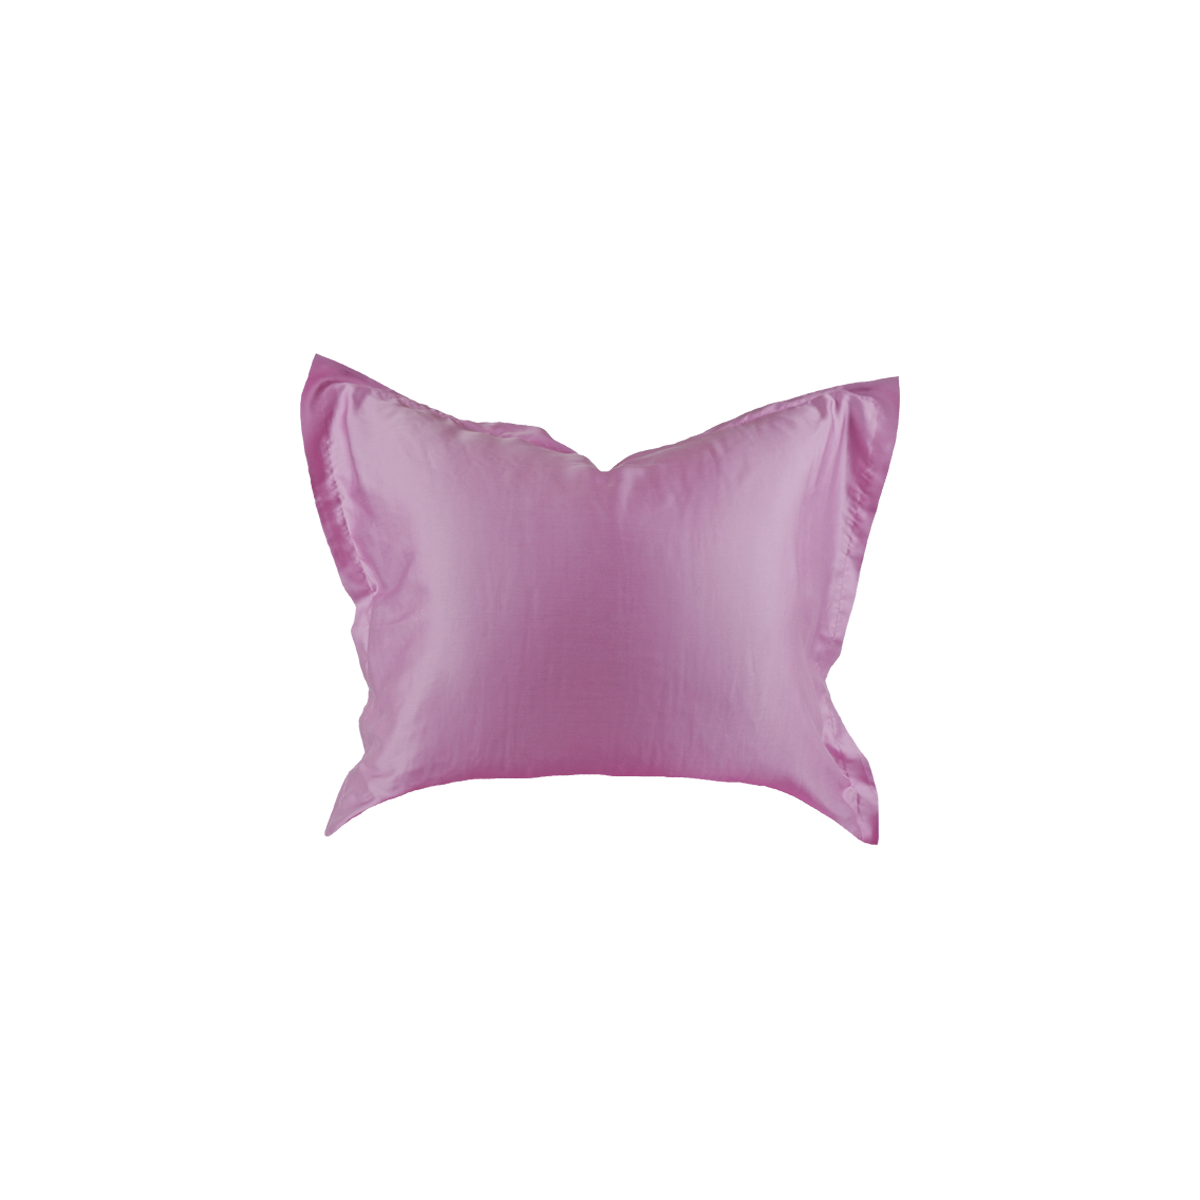 Crisp Sheets - Sleeping Beauty Sunset Pink